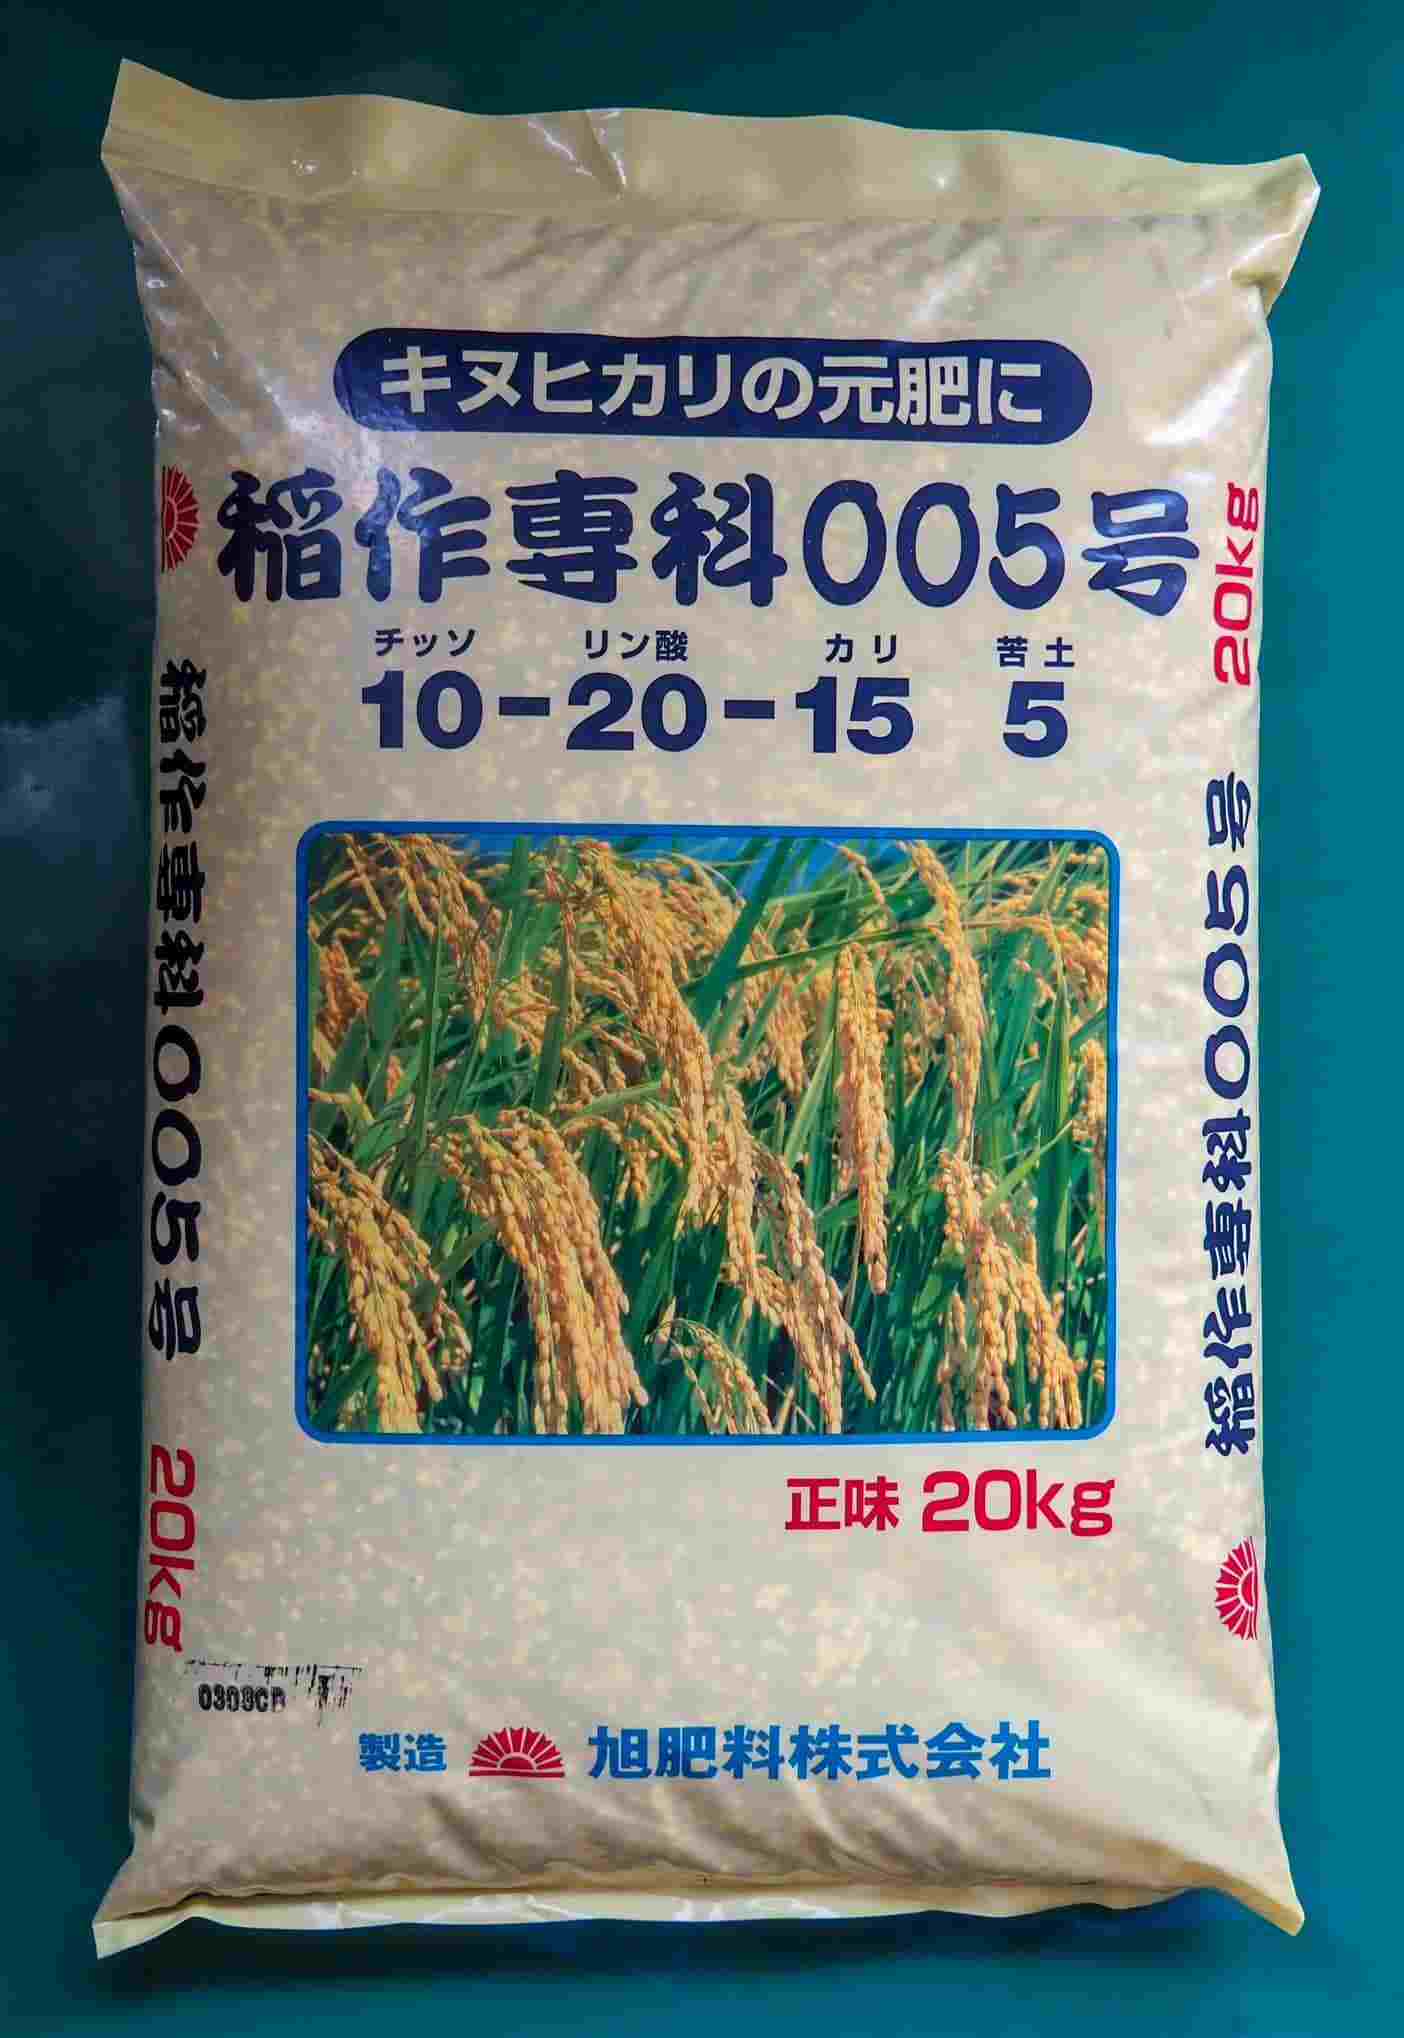 化成肥料 稲作専科005号 20kg 旭肥料 送料別の商品画像1